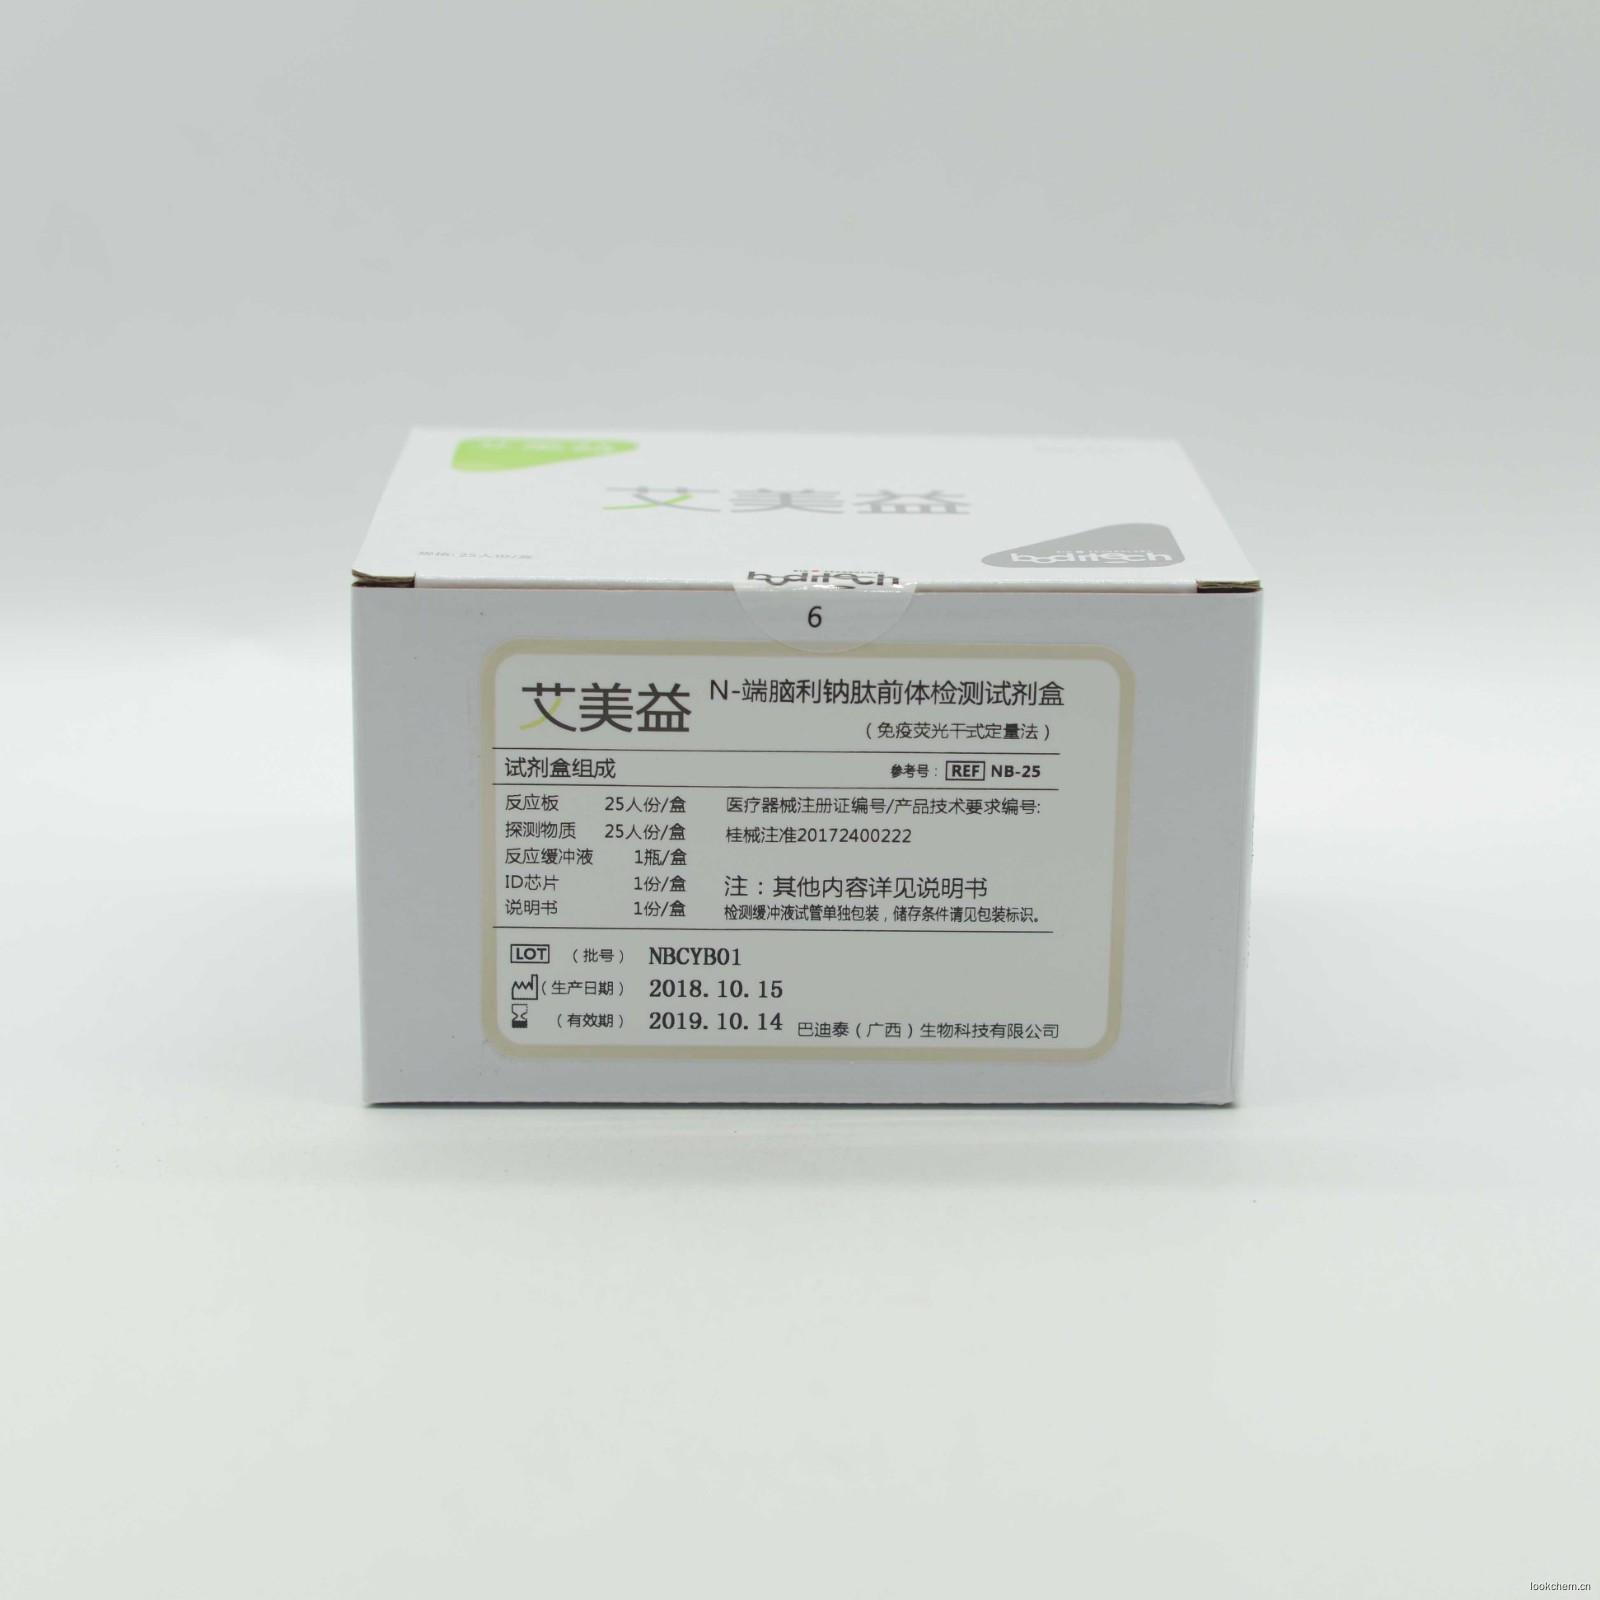 巴迪泰 N-端脑利钠肽前体检测试剂盒（免疫荧光干式定量法）